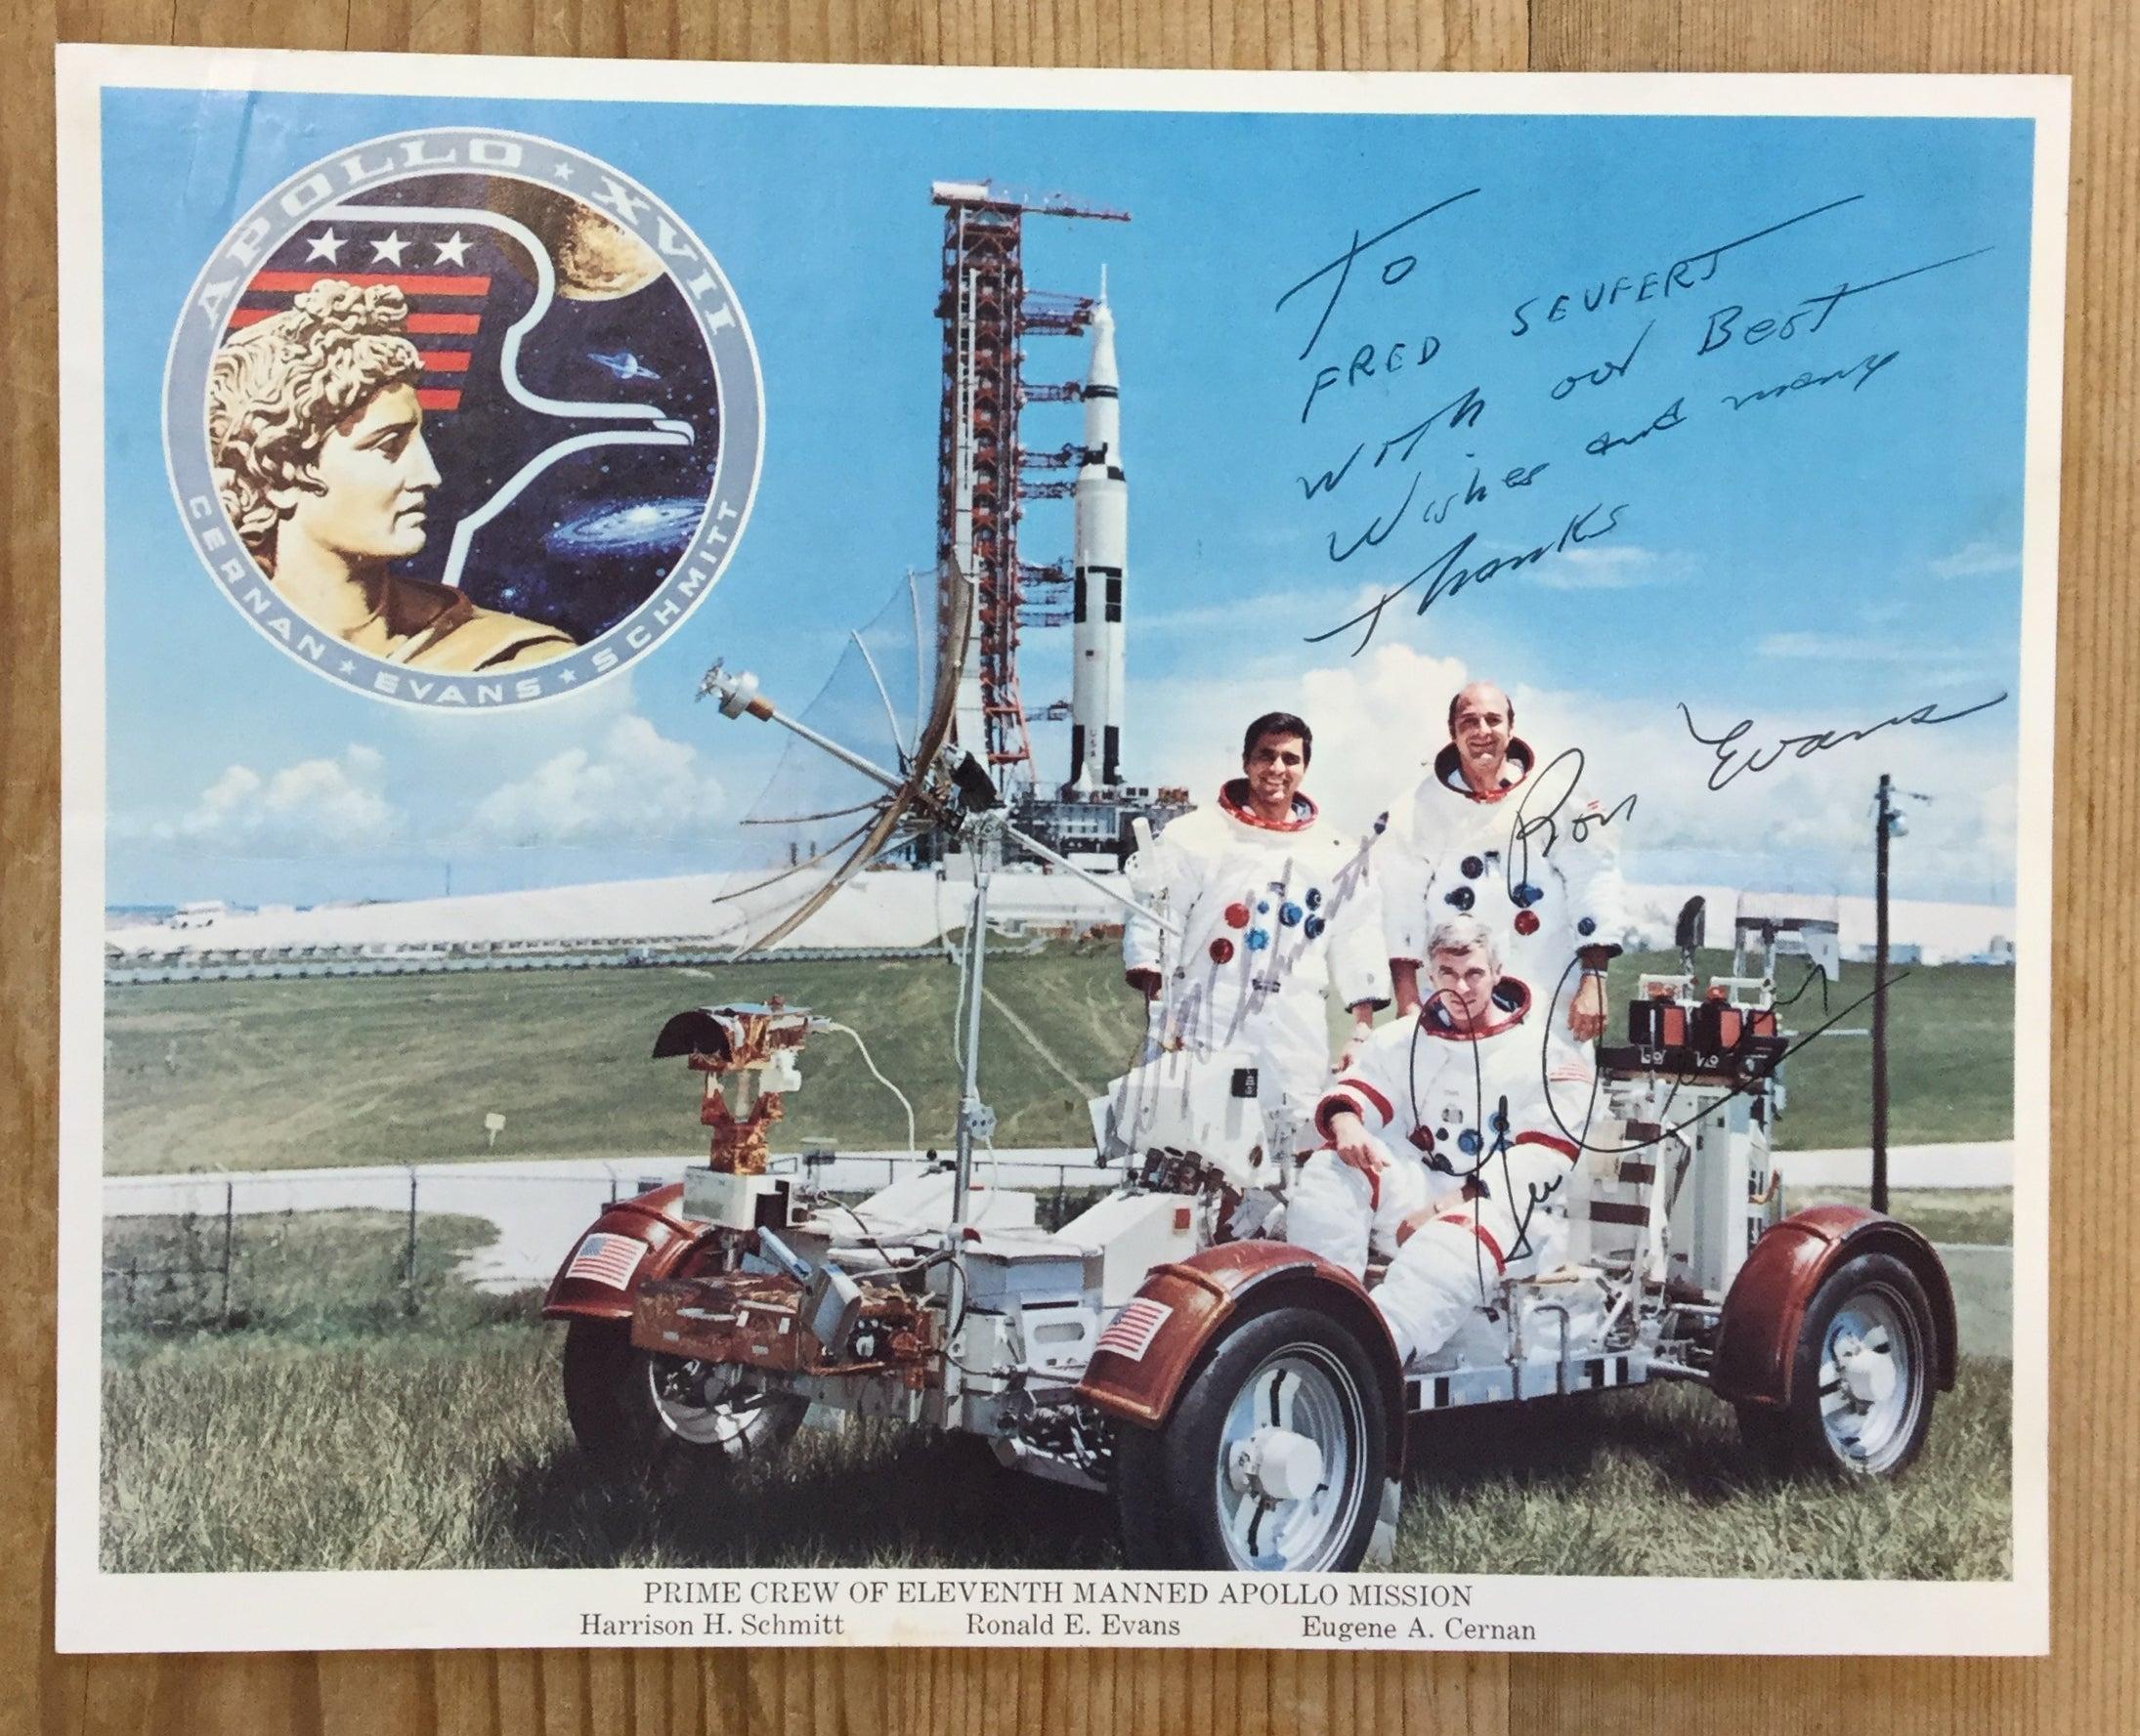 Ein von der NASA-Besatzung signiertes Farbfoto von Apollo 17
Die Apollo-17-Mission von 1972 war der bis heute letzte bemannte Mondflug. Daher ist dieses Foto von den letzten Menschen signiert, die das Gefühl hatten, die Mondoberfläche zu